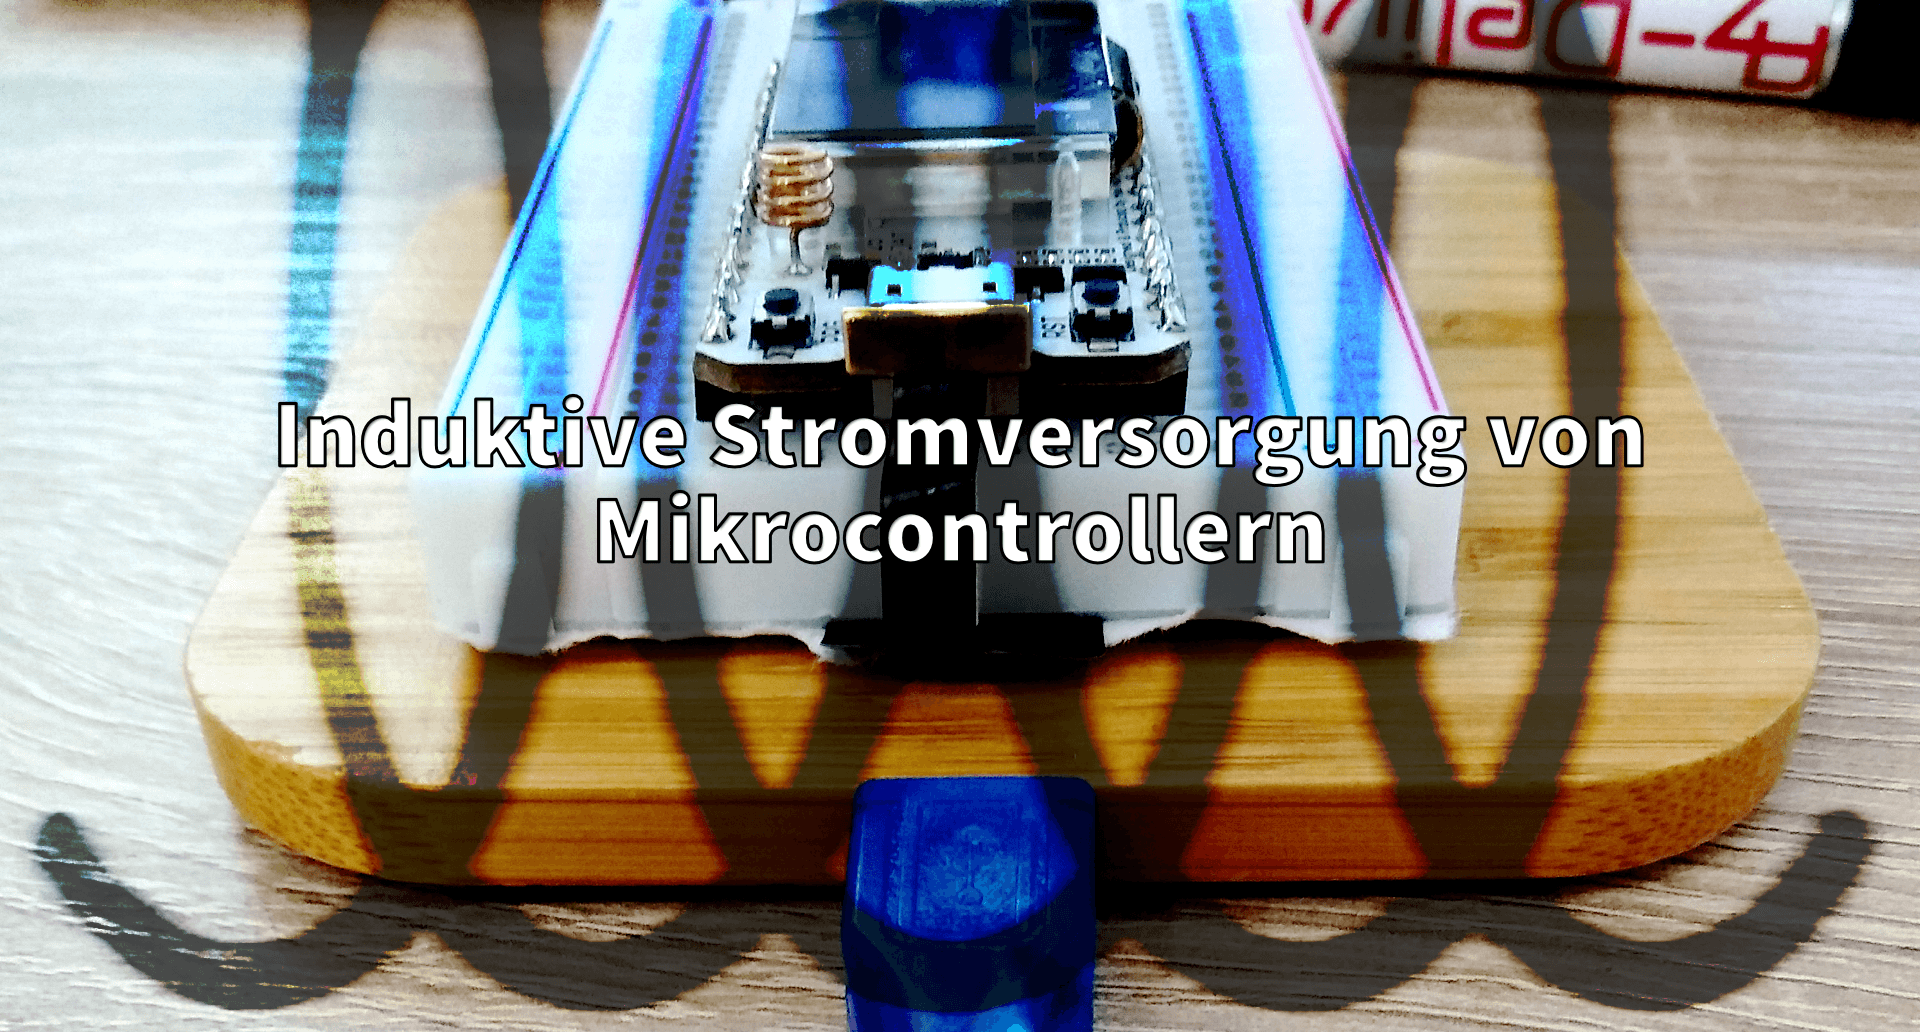 Induktive Stromversorgung von Mikrocontroller - AZ-Delivery